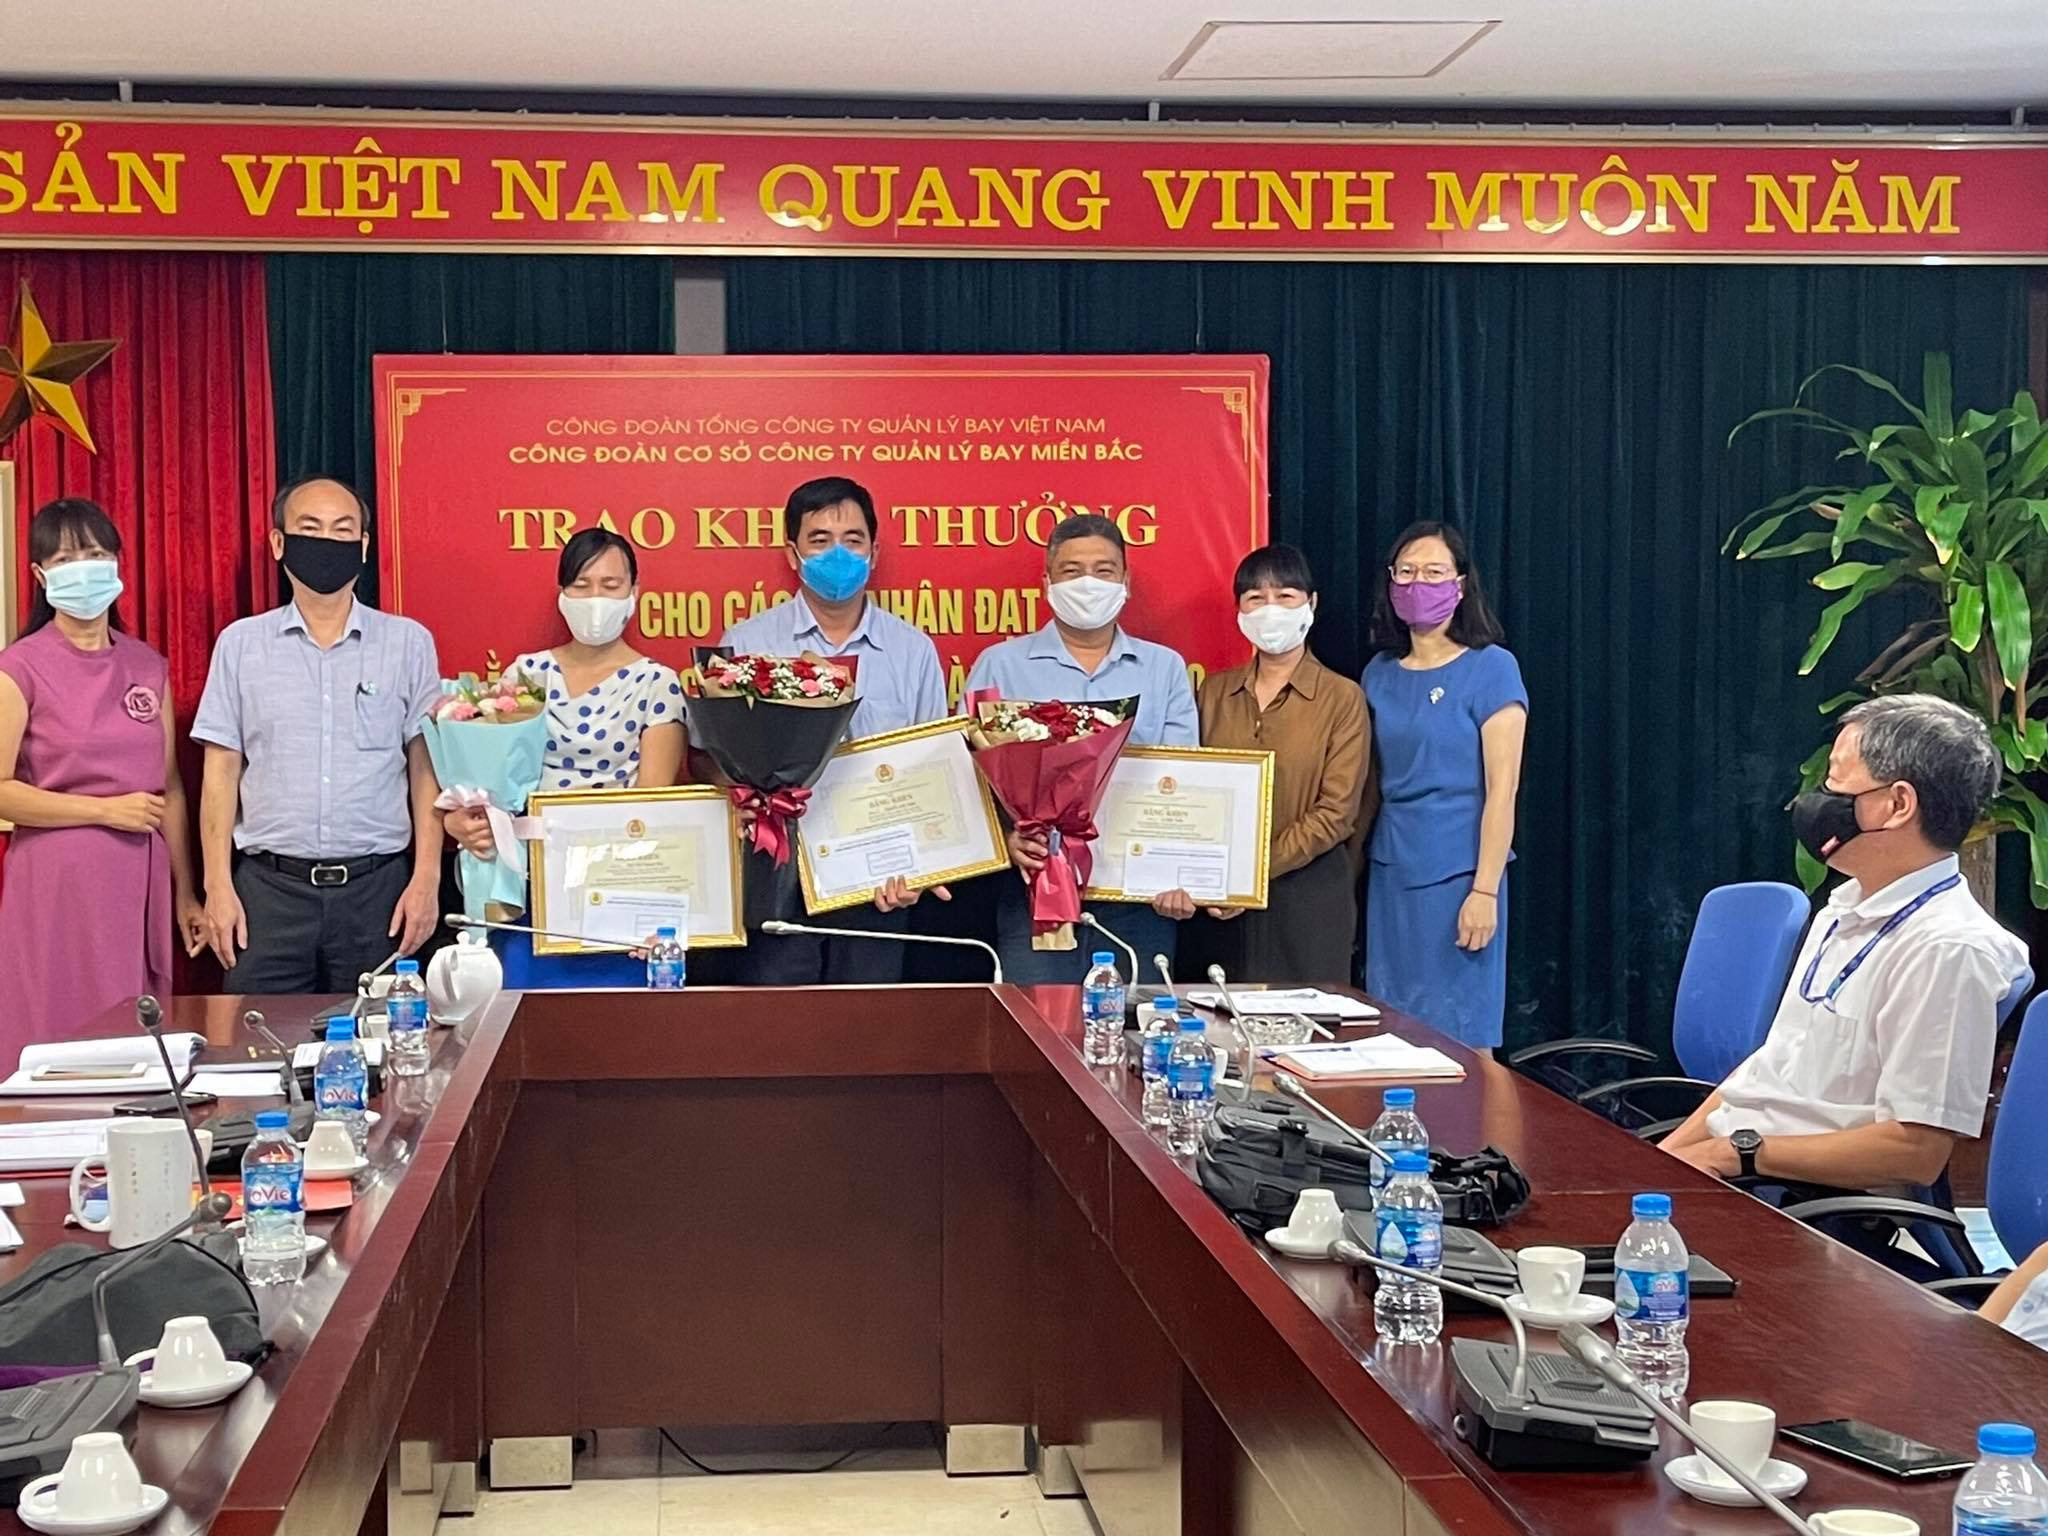 Trao tặng Bằng khen Công đoàn Giao thông vận tải Việt Nam cho 06 cá nhân đạt thành tích xuất sắc, tiêu biểu năm 2020 tại Công ty Quản lý bay miền Bắc